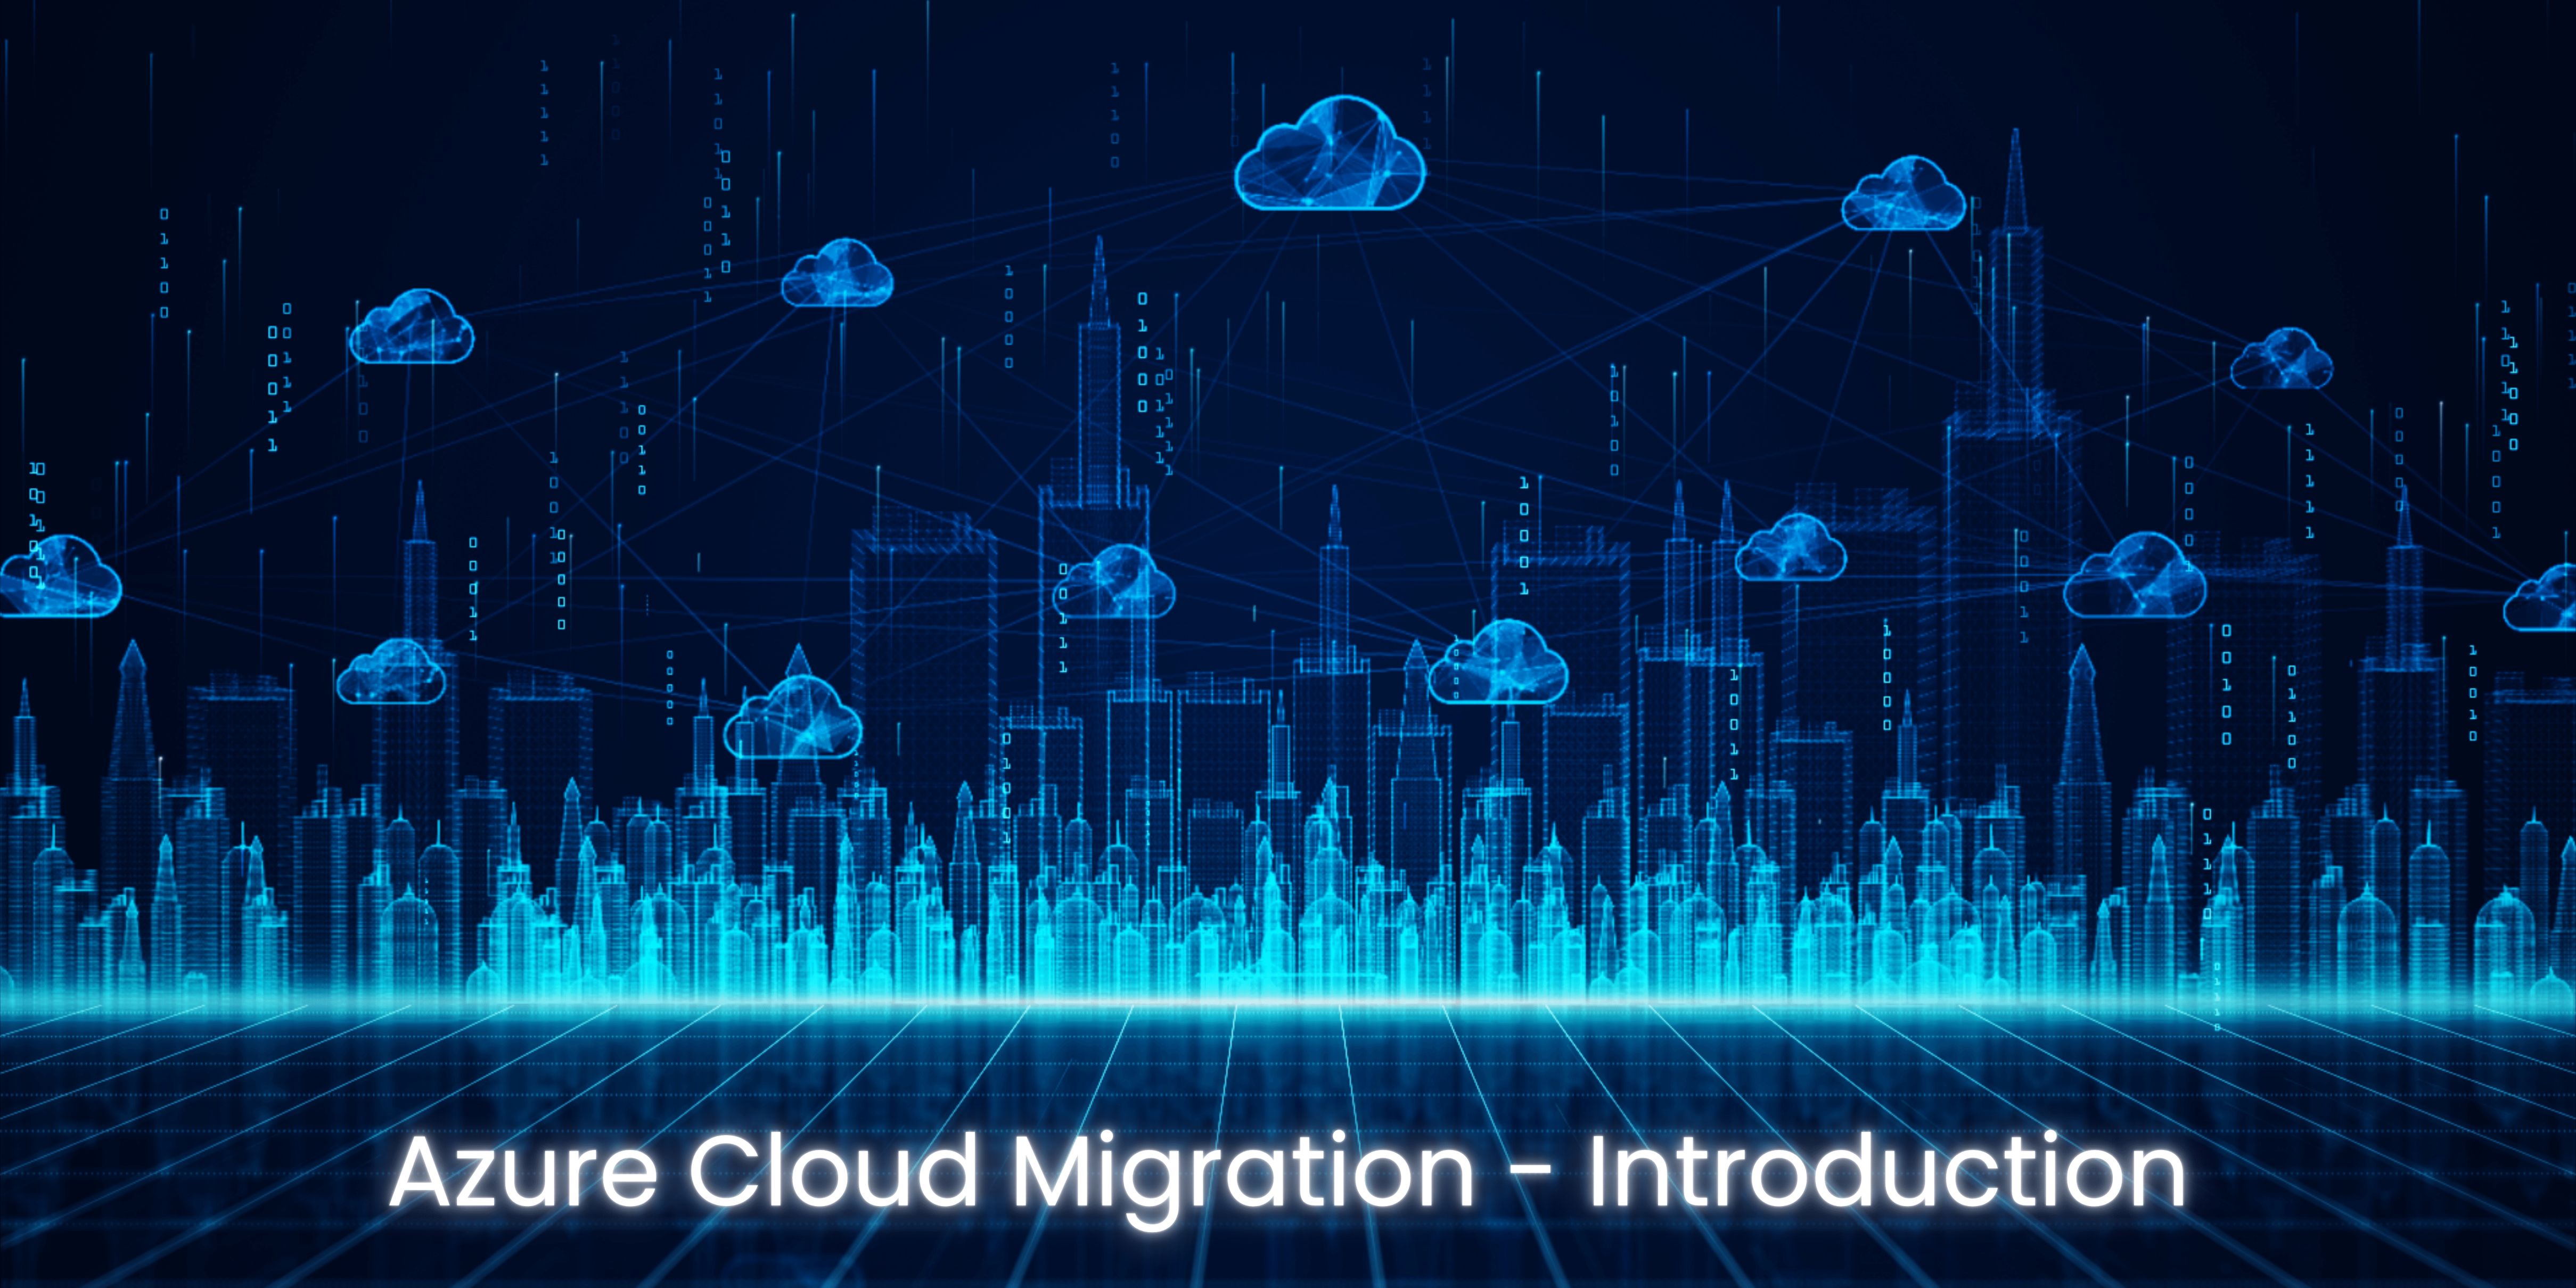 Azure Cloud Migration - Introduction